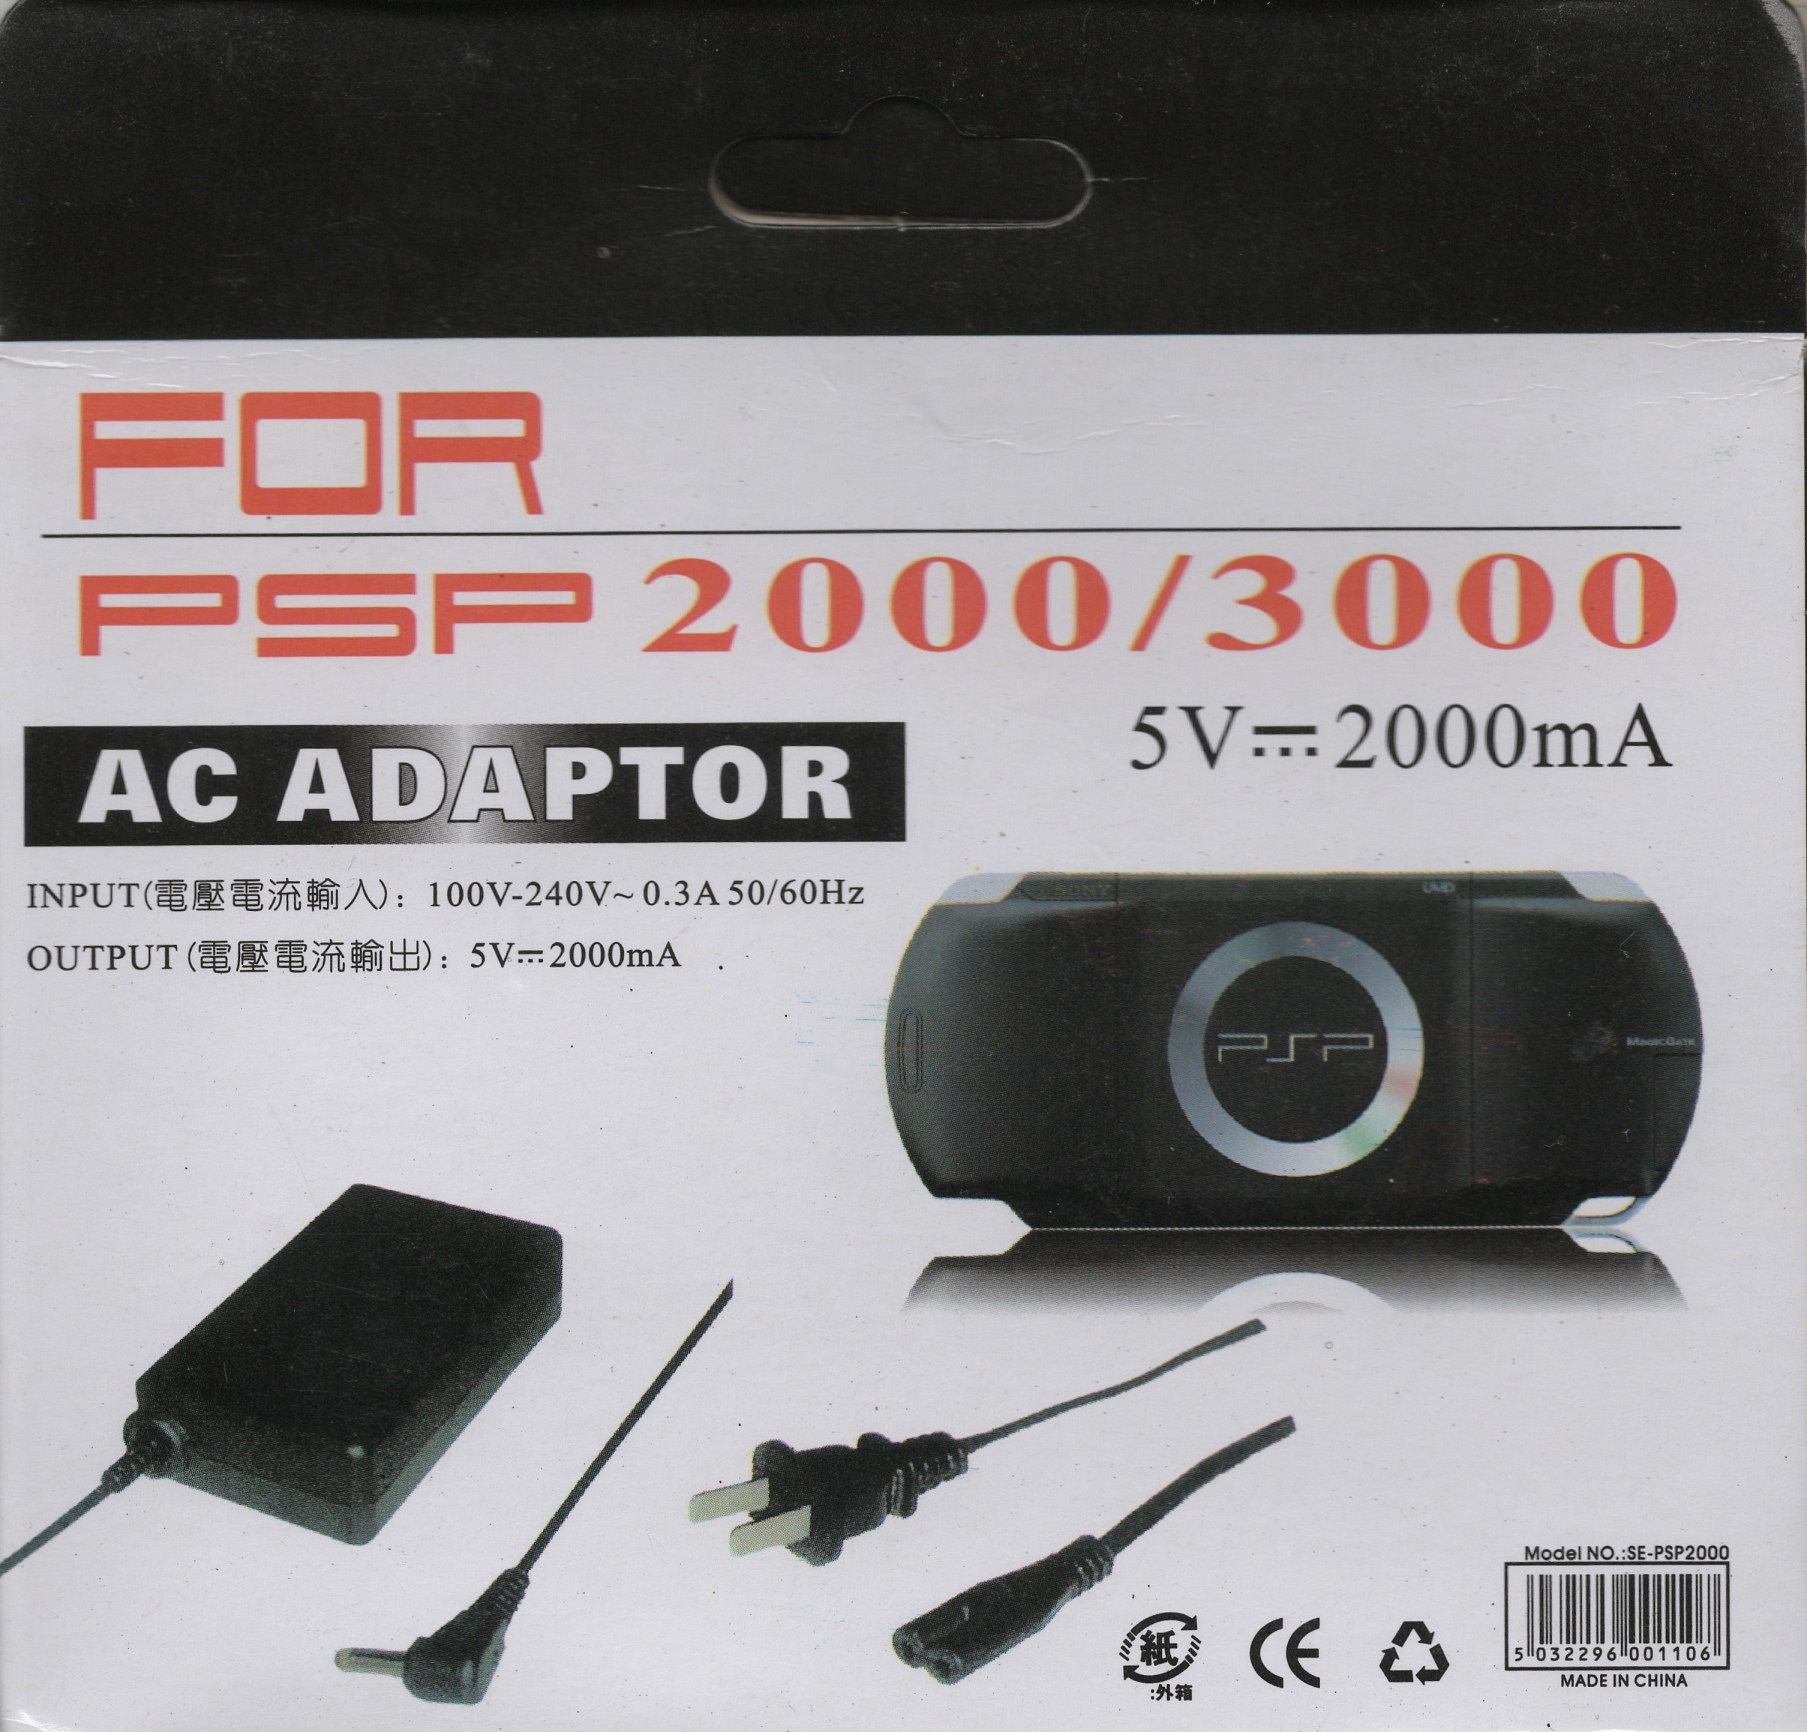 Hálózati adapter és töltő PSP 2000/3000-res gépekhez